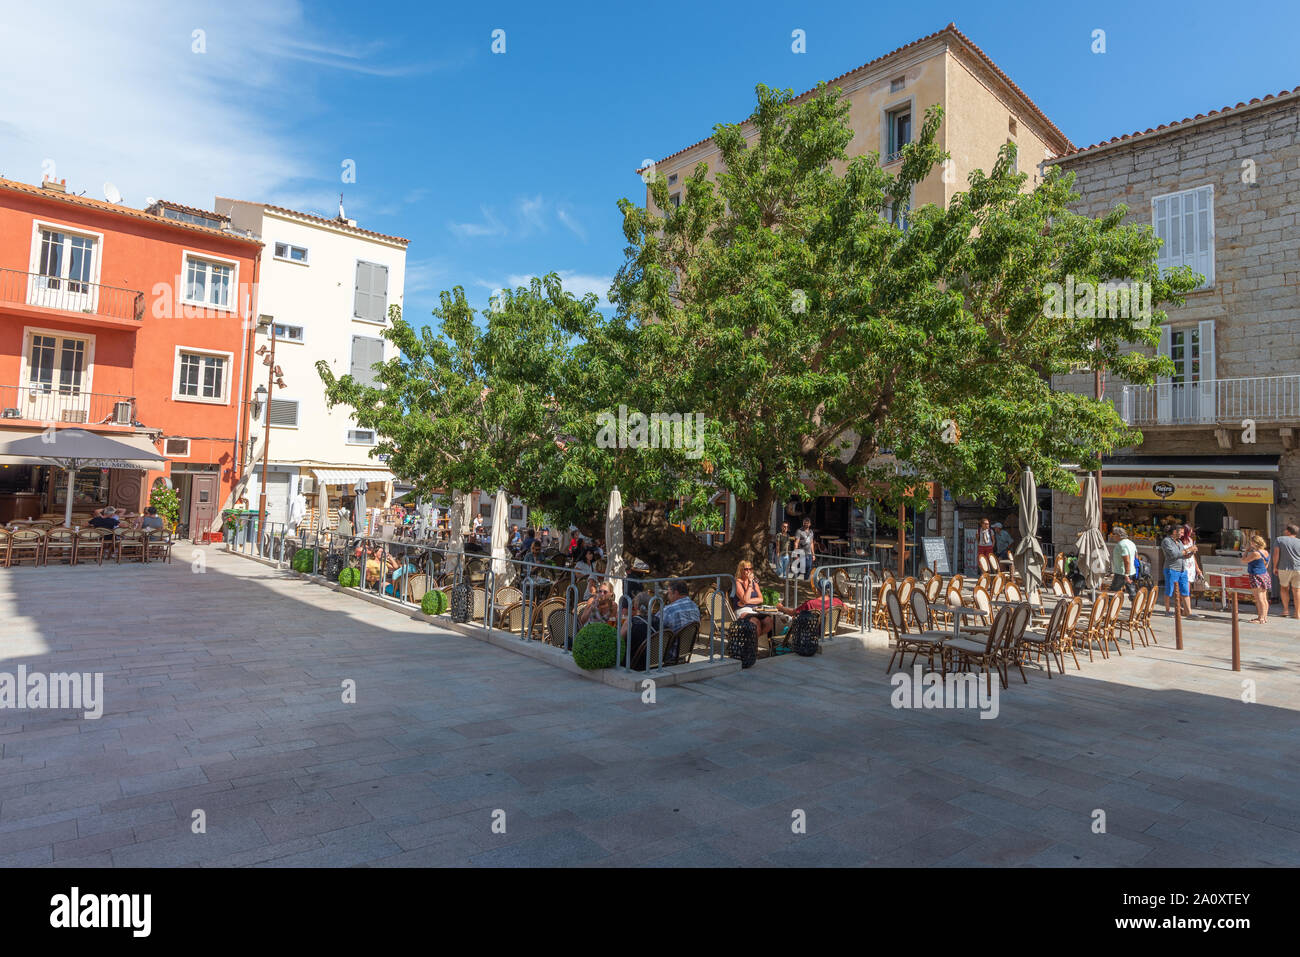 Porto-Vecchio, Corsica, Francia - Sep 20, 2019: un vecchio albero tabelle di ombreggiatura sulla trafficata piazza principale della città vecchia. Prese durante un pomeriggio d'estate. Foto Stock